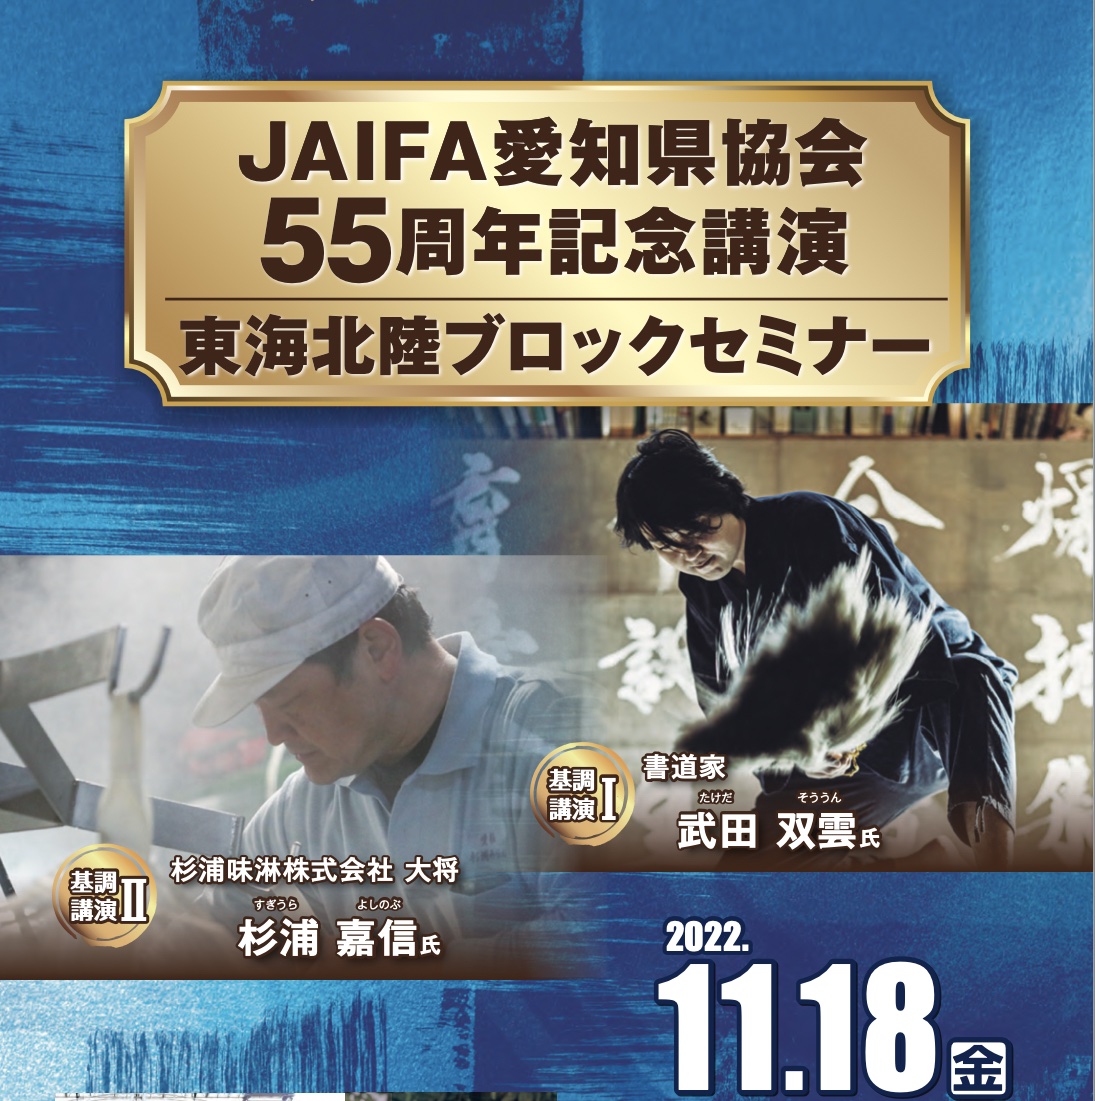 JAIFA愛知県協会55周年記念講演　東海北陸ブロックセミナーにて、基調講演をさせていただきます